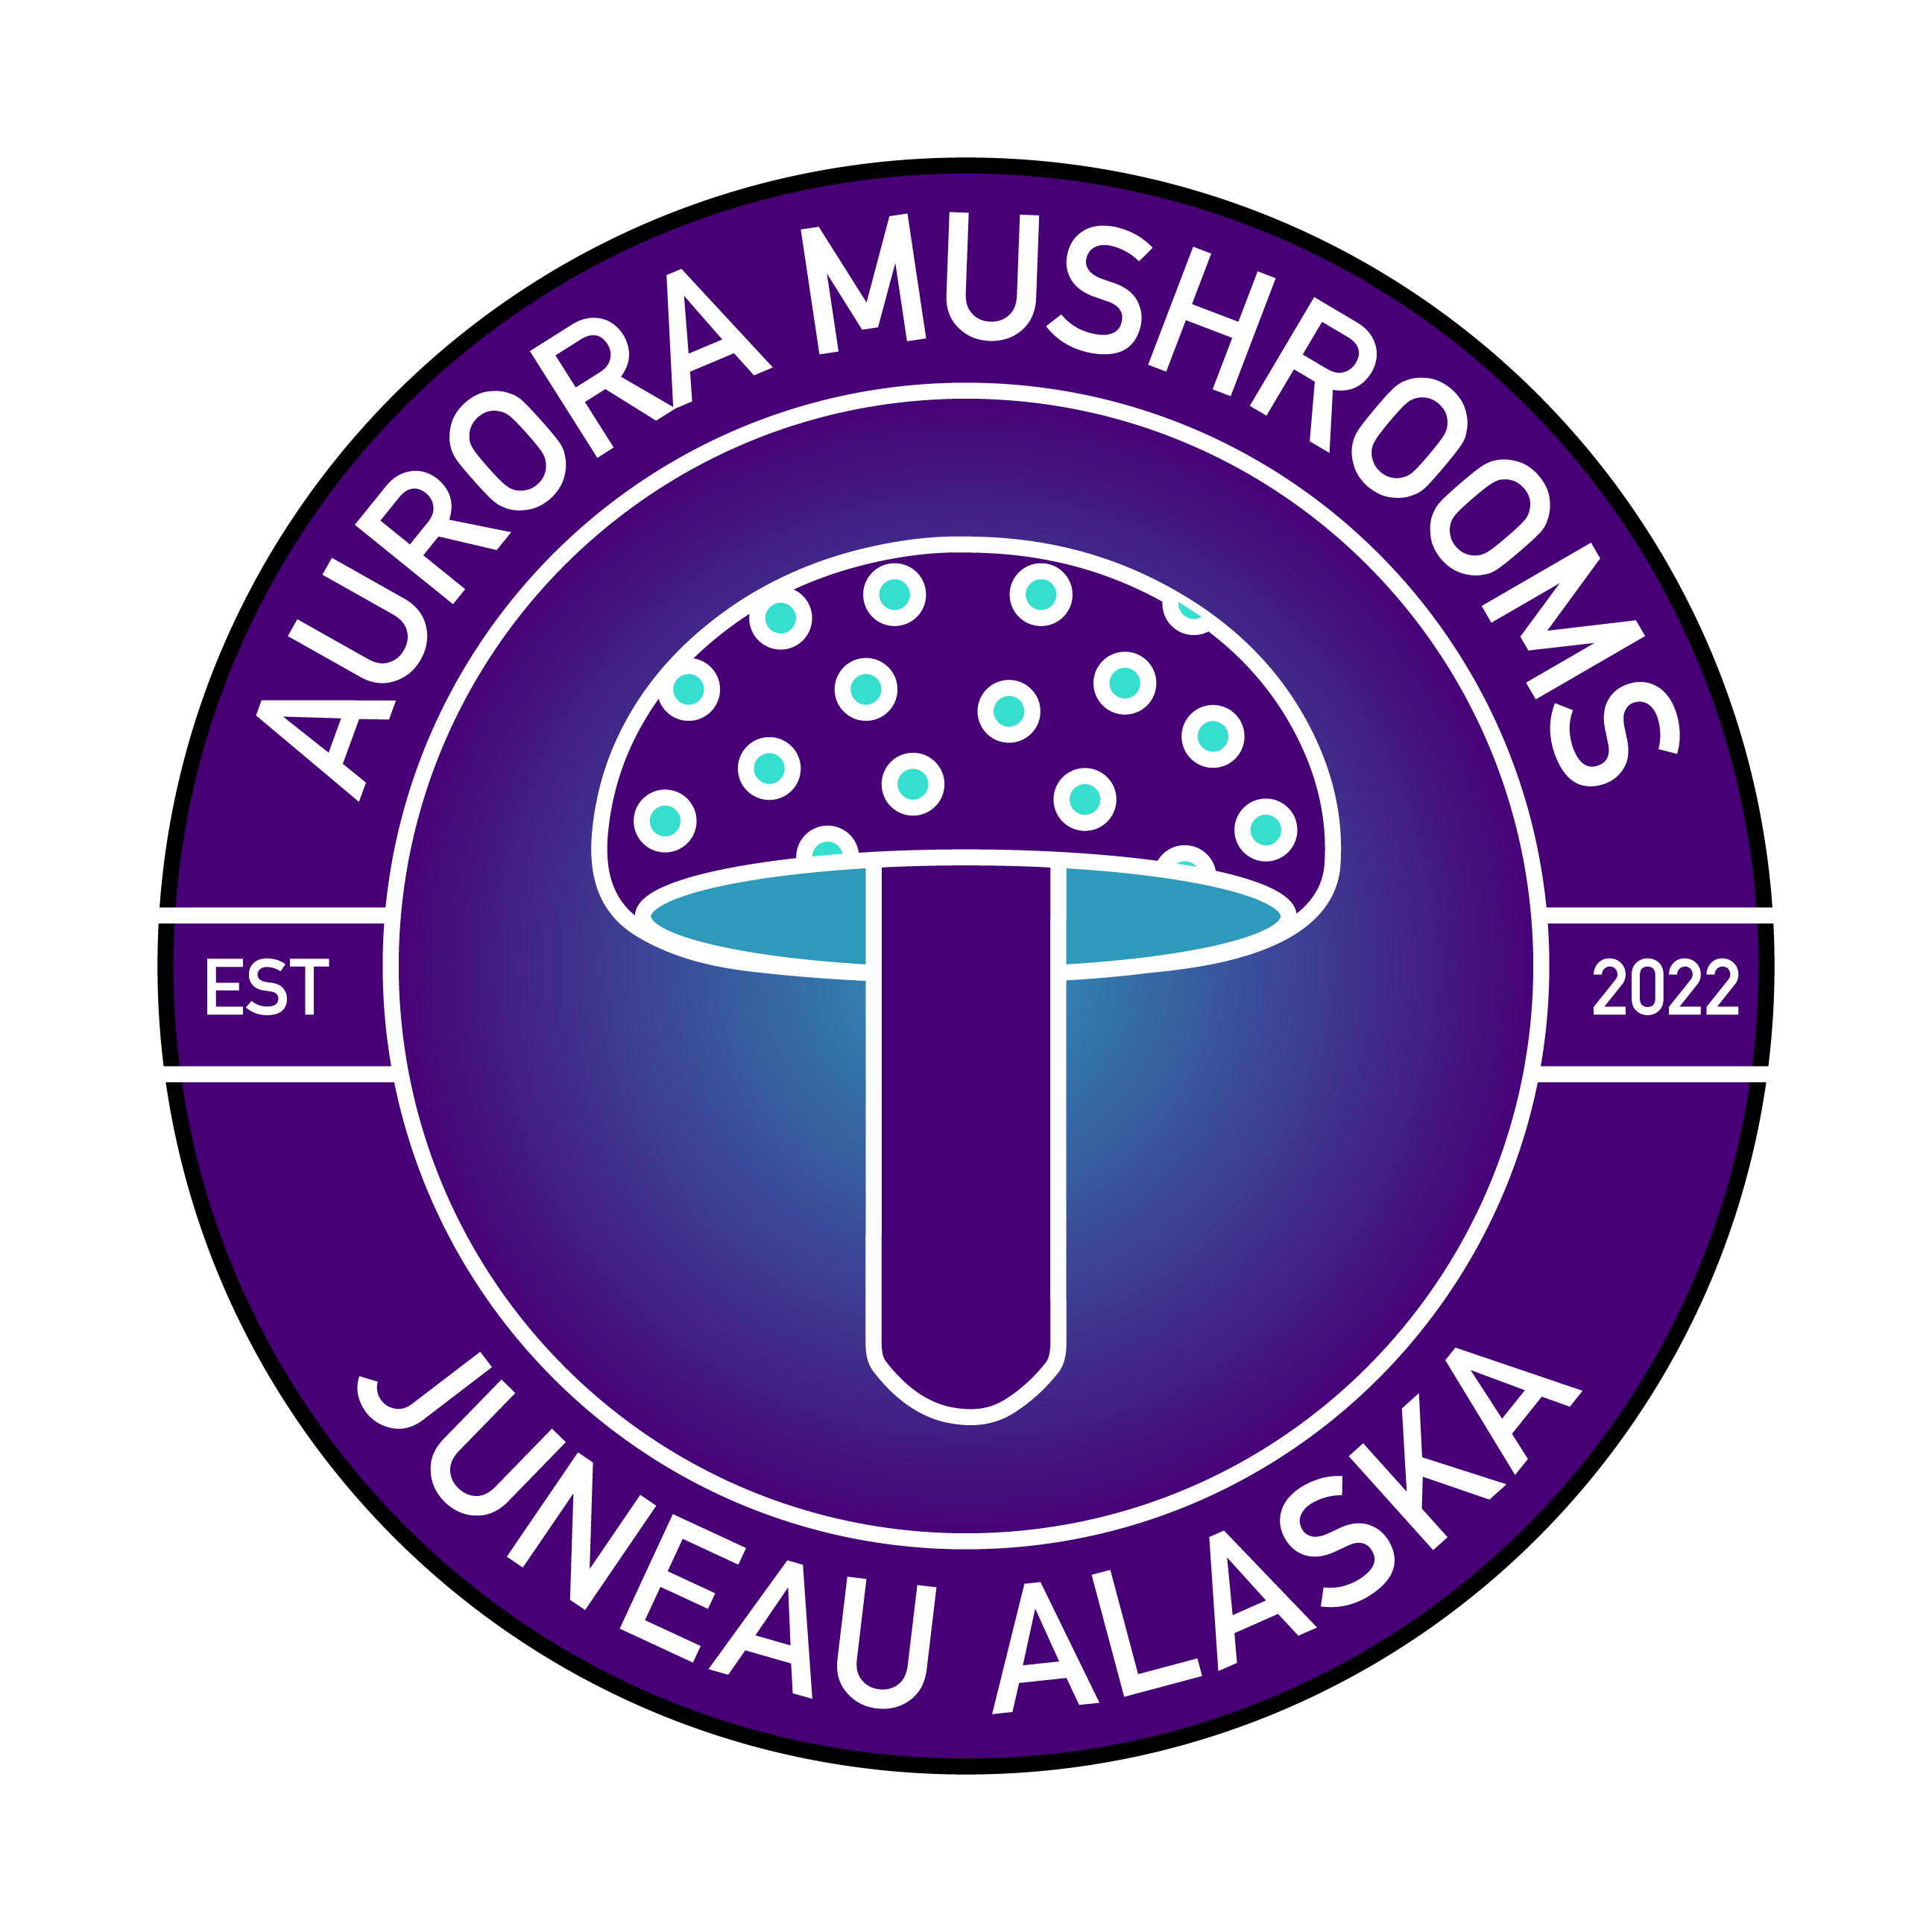 Aurora Mushrooms